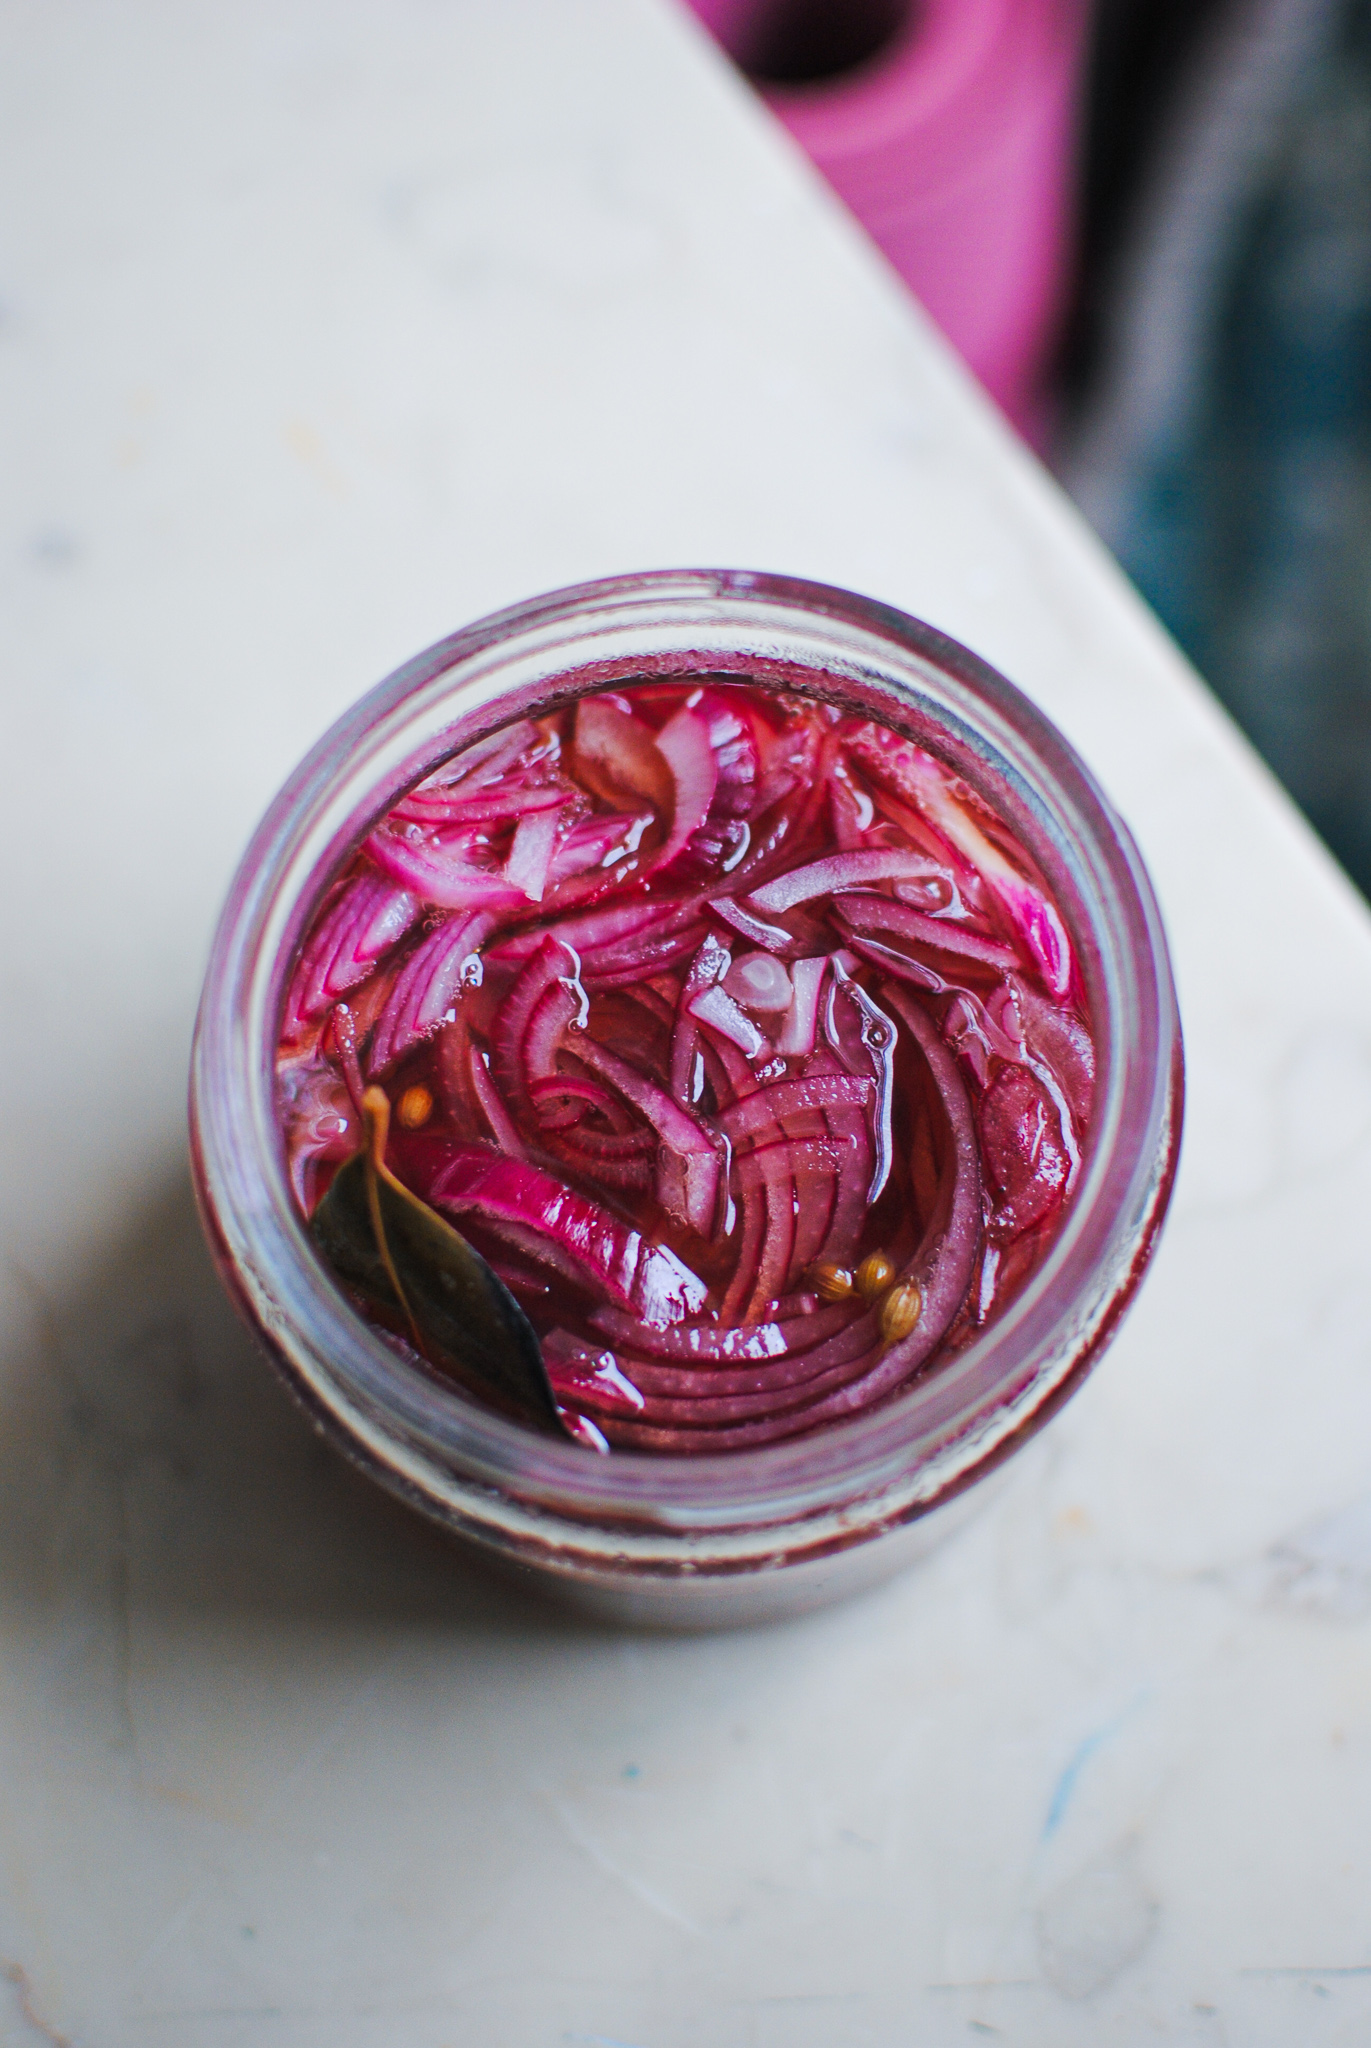 pickles de cebola roxa | please consider | joana limao